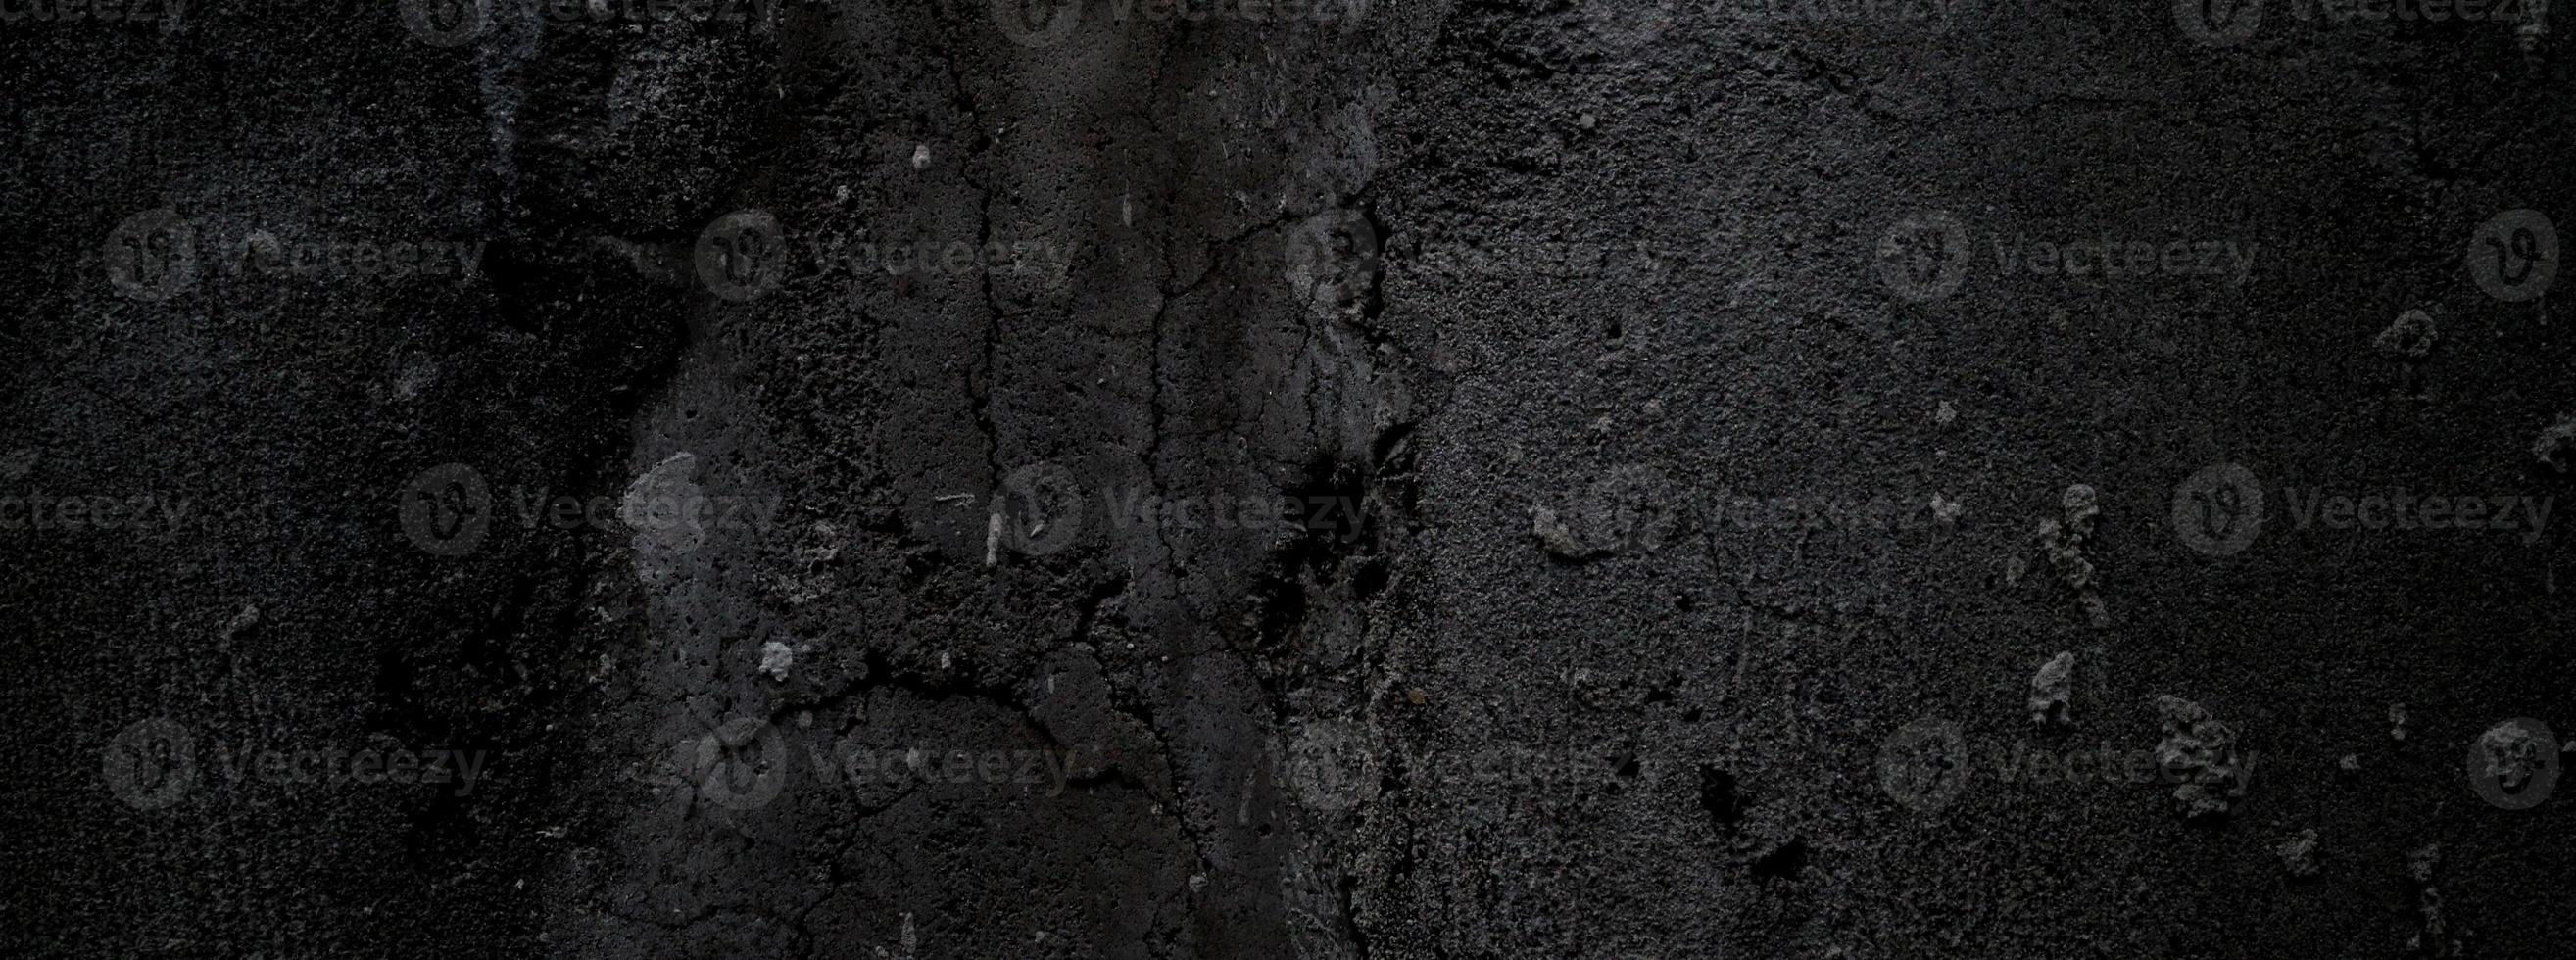 schwarze wand beängstigend oder dunkelgrauer rauer körniger steinbeschaffenheitshintergrund. schwarzer Beton für den Hintergrund. foto